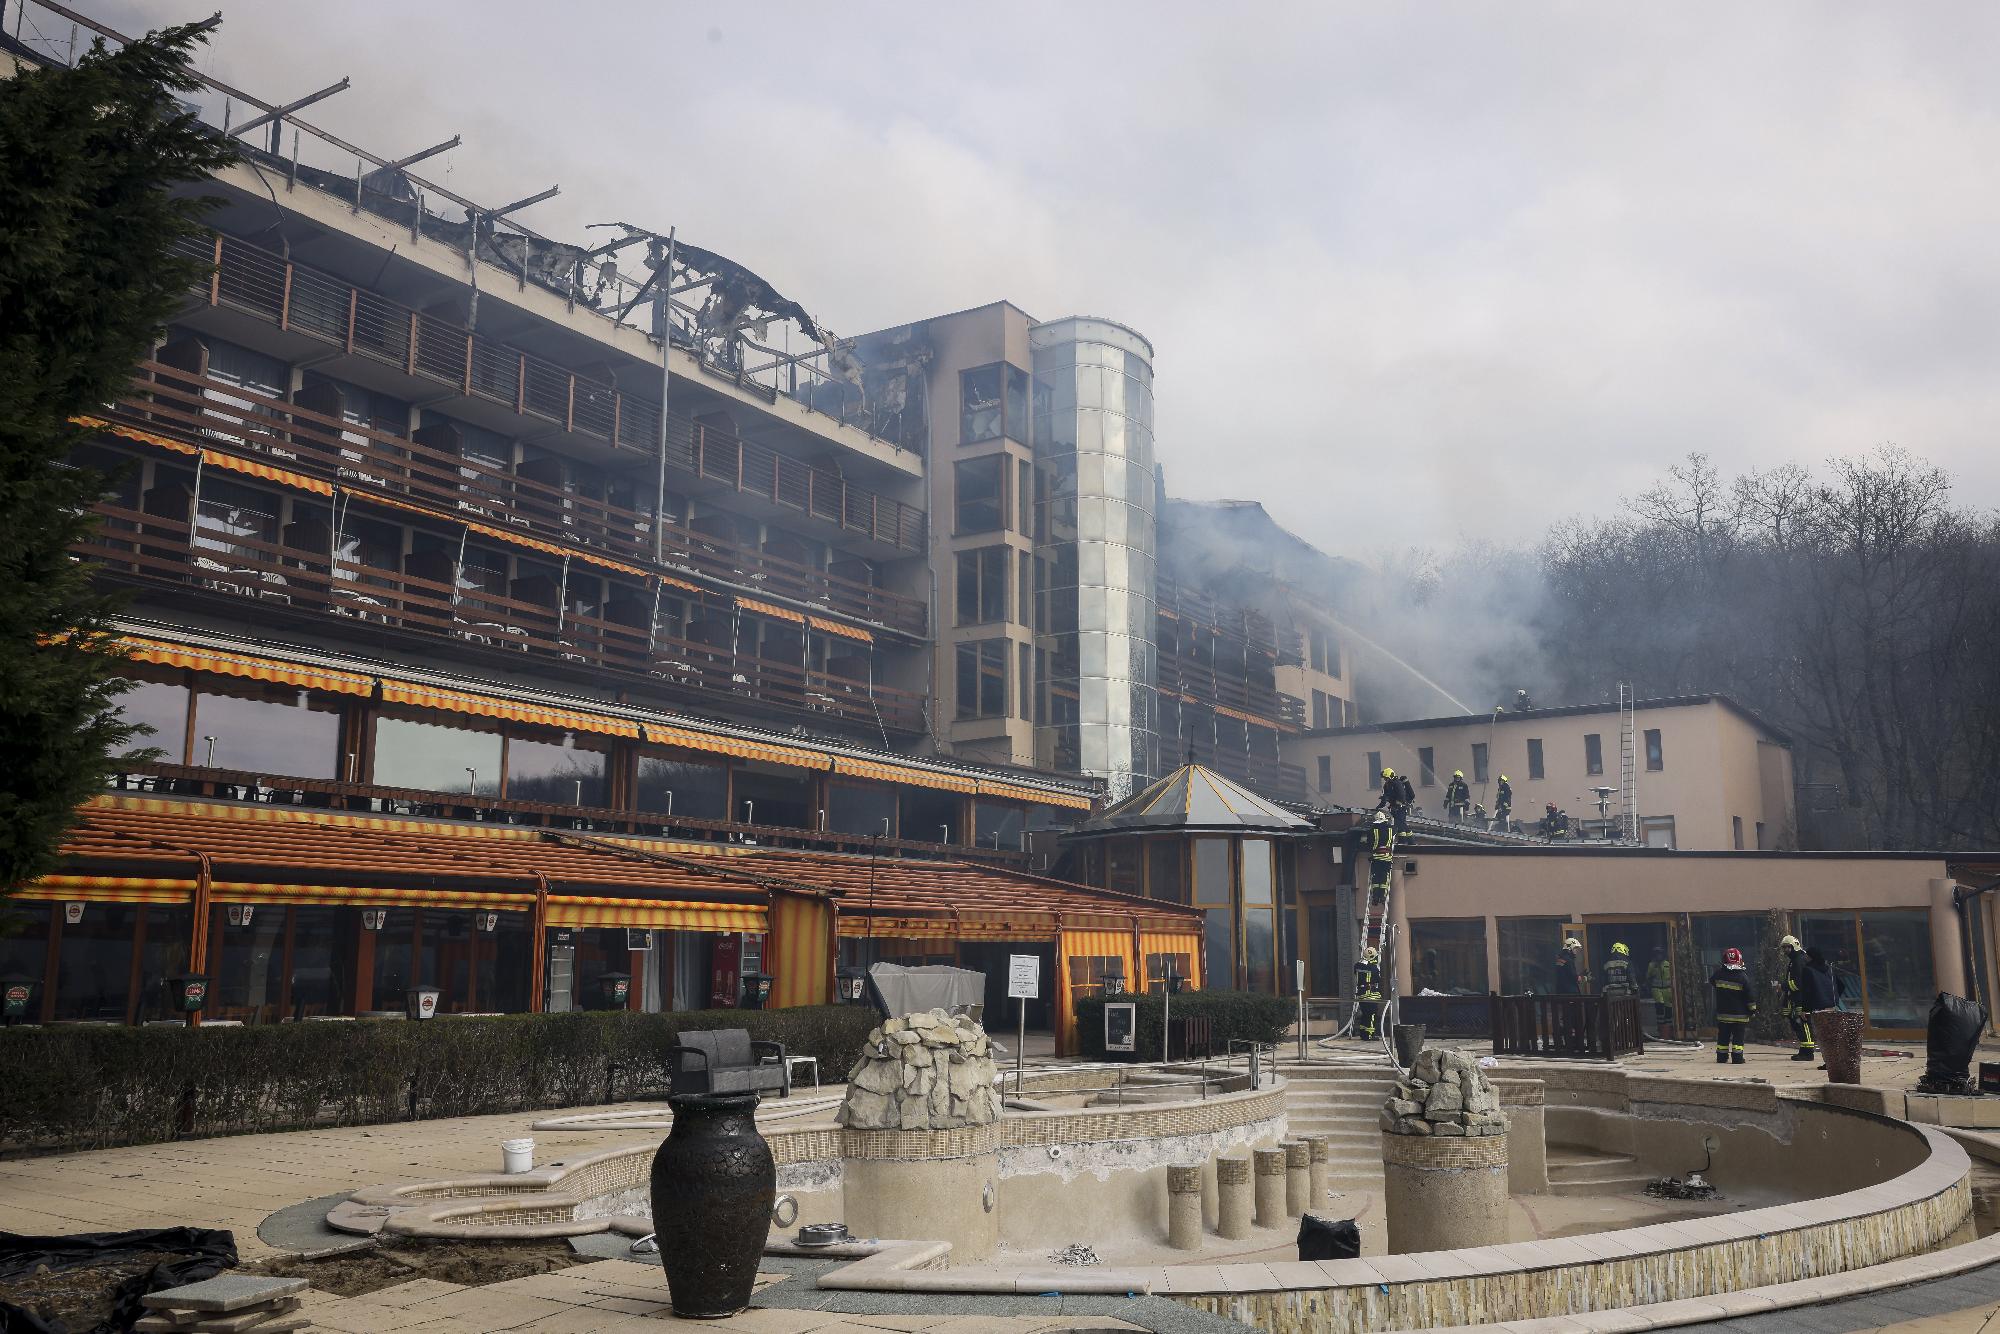 A Hotel Silvanus Visegrád a közösségi oldalán számolt be a tűz utáni helyzetről, az alkalmazottak sorsáról